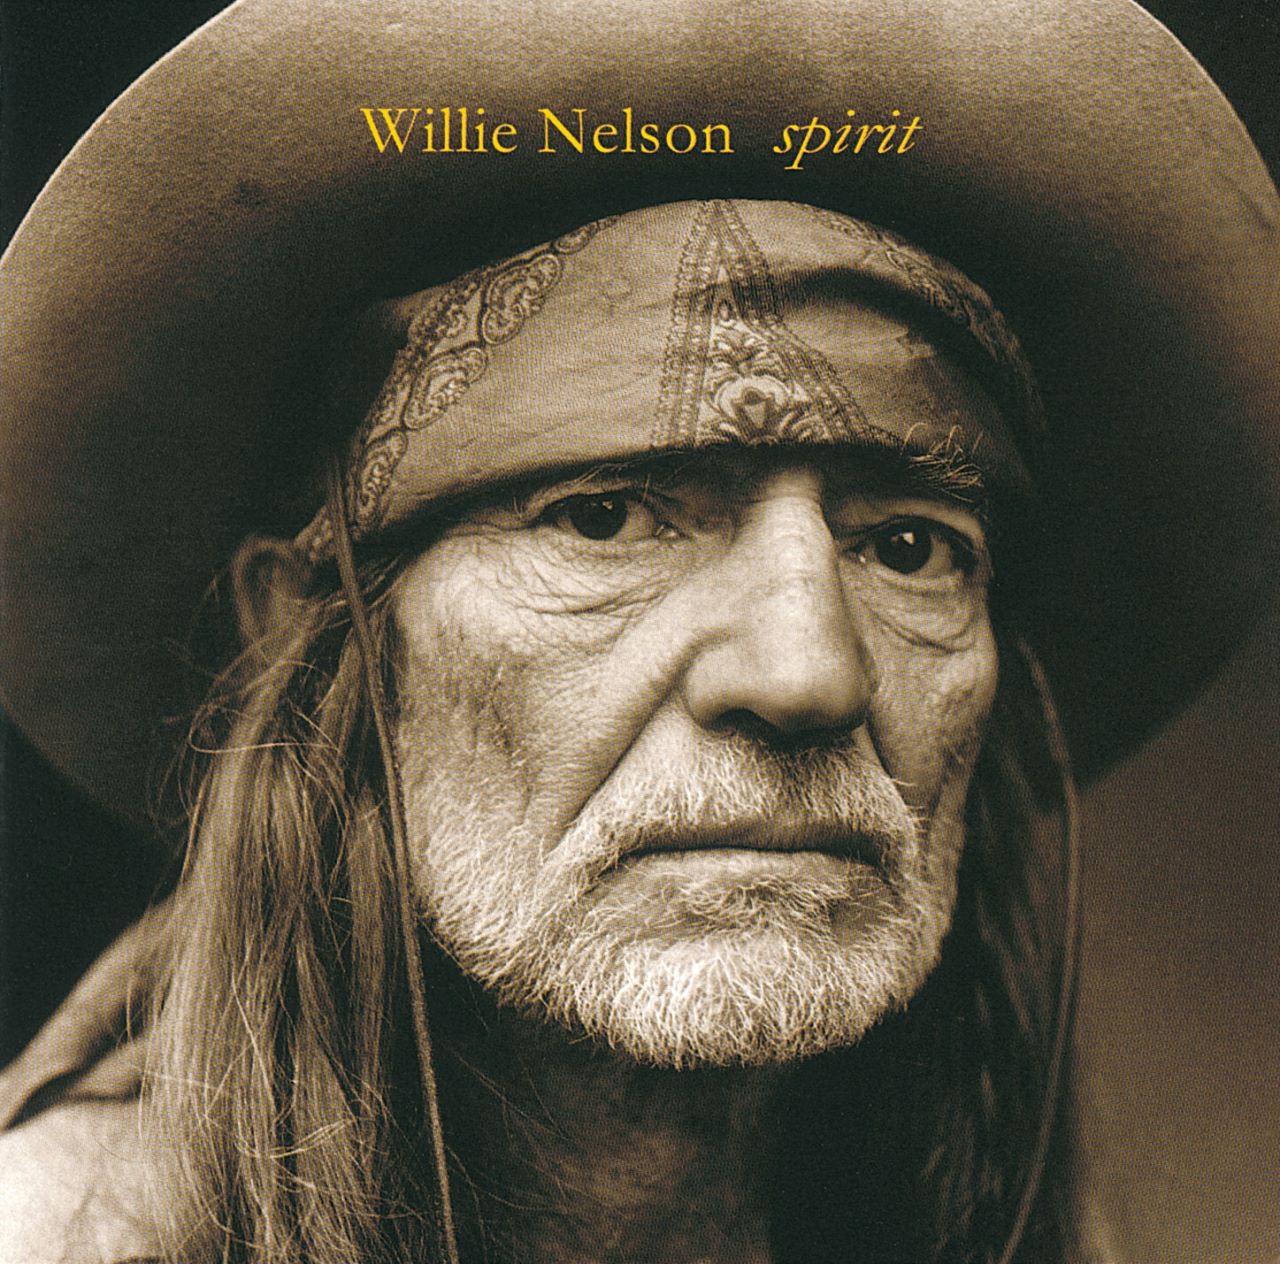 Willie Nelson – Spirit cover album